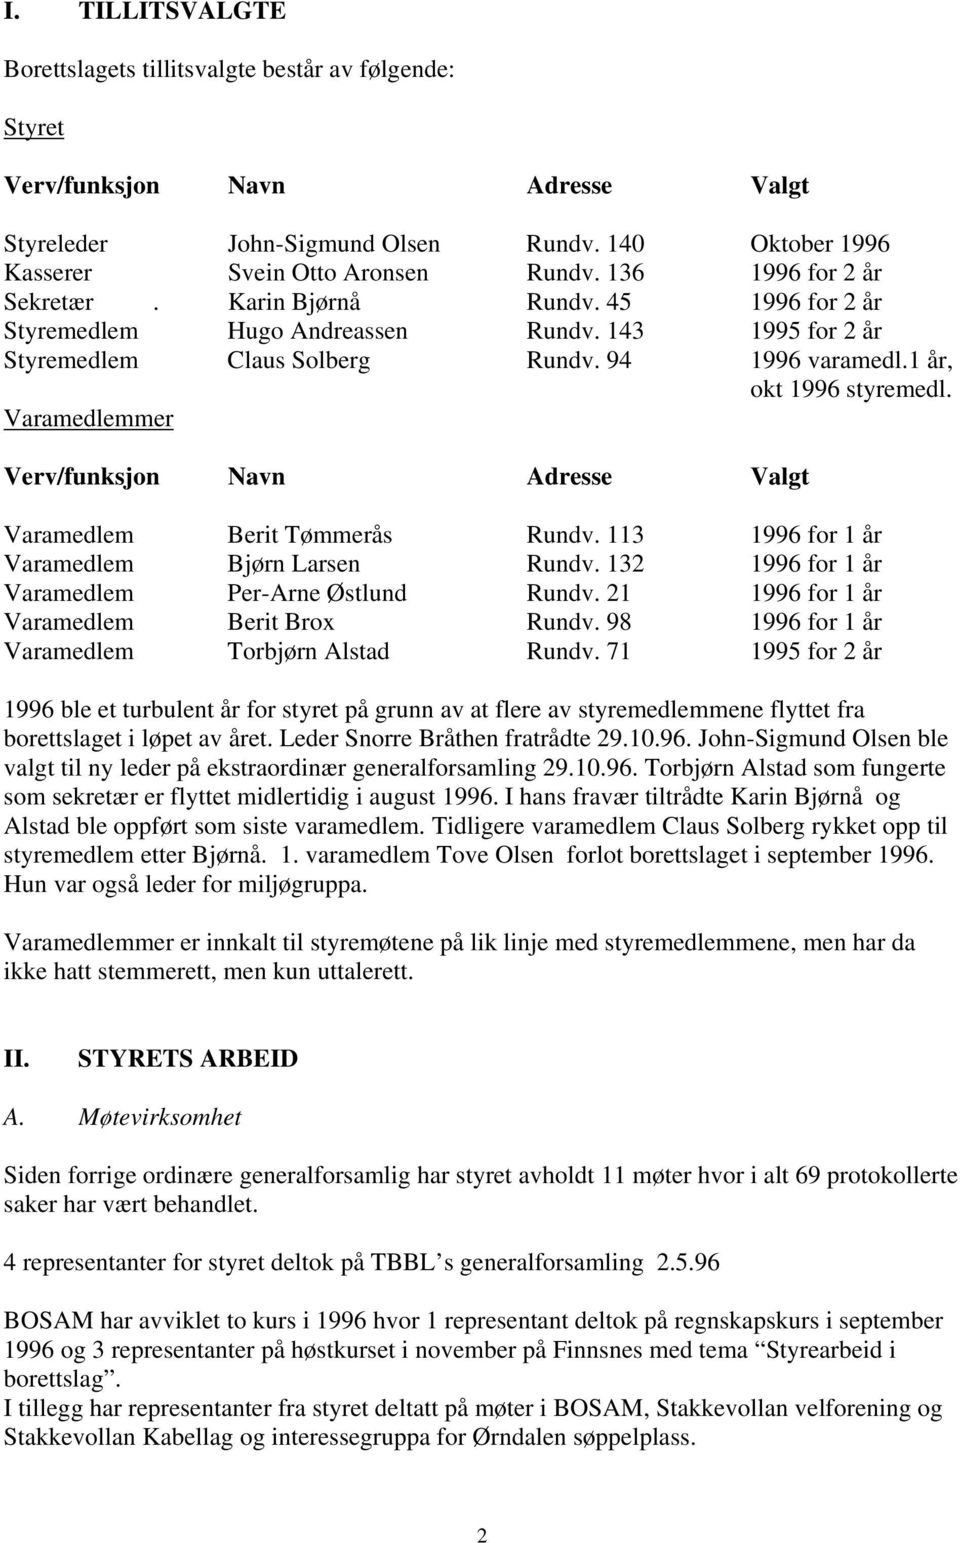 Varamedlemmer Verv/funksjon Navn Adresse Valgt Varamedlem Berit Tømmerås Rundv. 113 1996 for 1 år Varamedlem Bjørn Larsen Rundv. 132 1996 for 1 år Varamedlem Per-Arne Østlund Rundv.